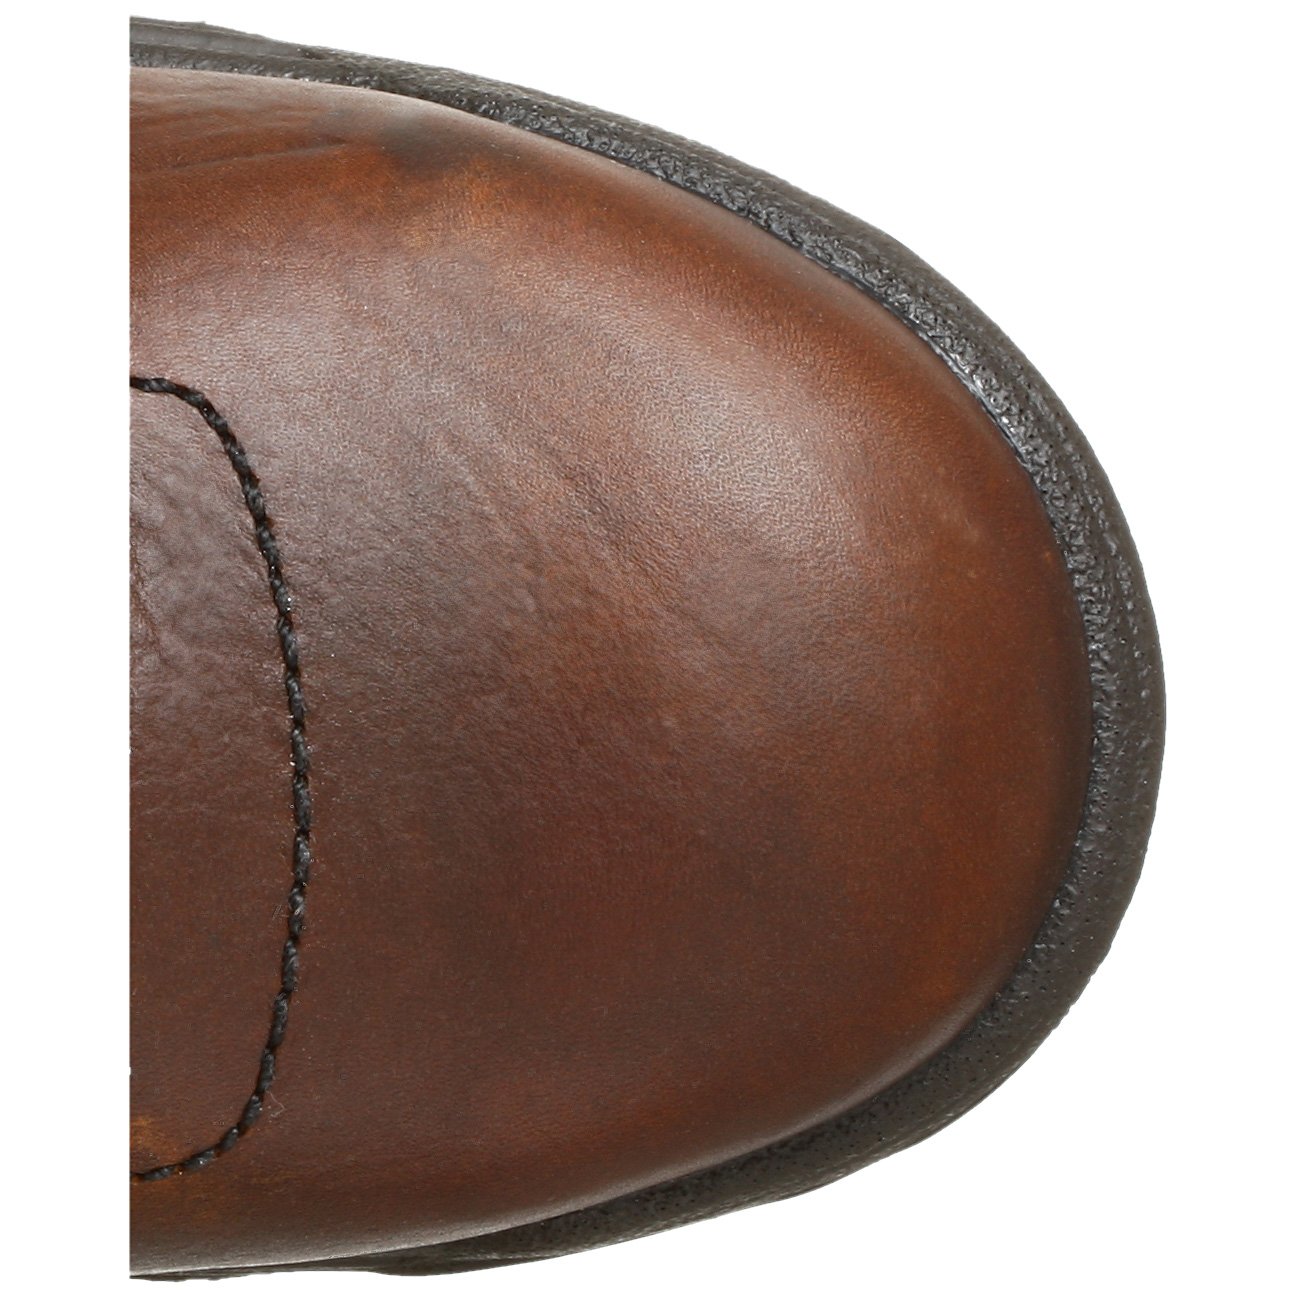 Timberland PRO Men's Titan 6" Composite Toe Industrial Work Boot